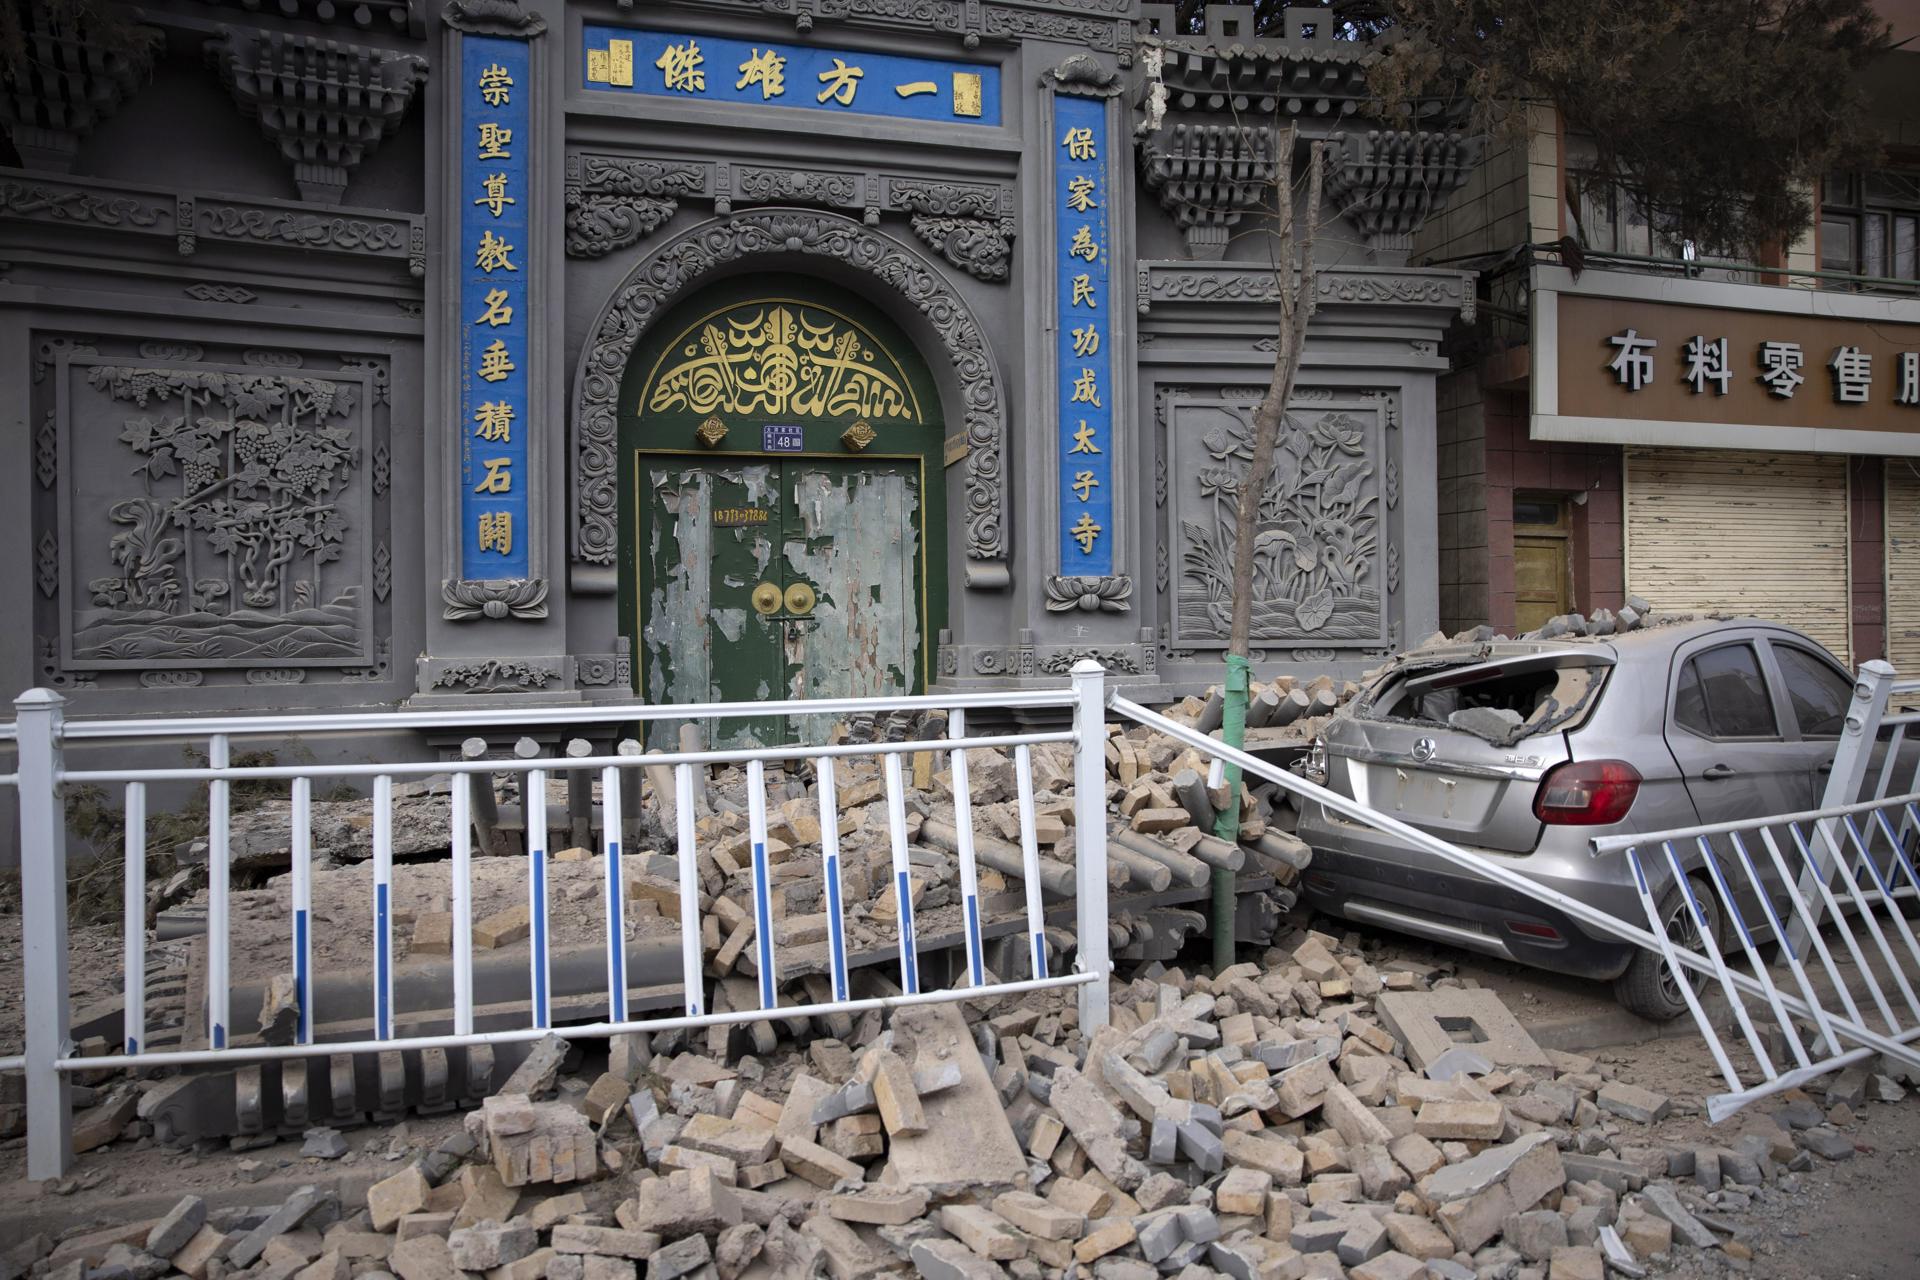 Los cascotes inundan las calles de la ciudad de Dahejia, en Gansu, tras el terremoto de la pasada semana en esa provincia china. Foto: fuente externa.